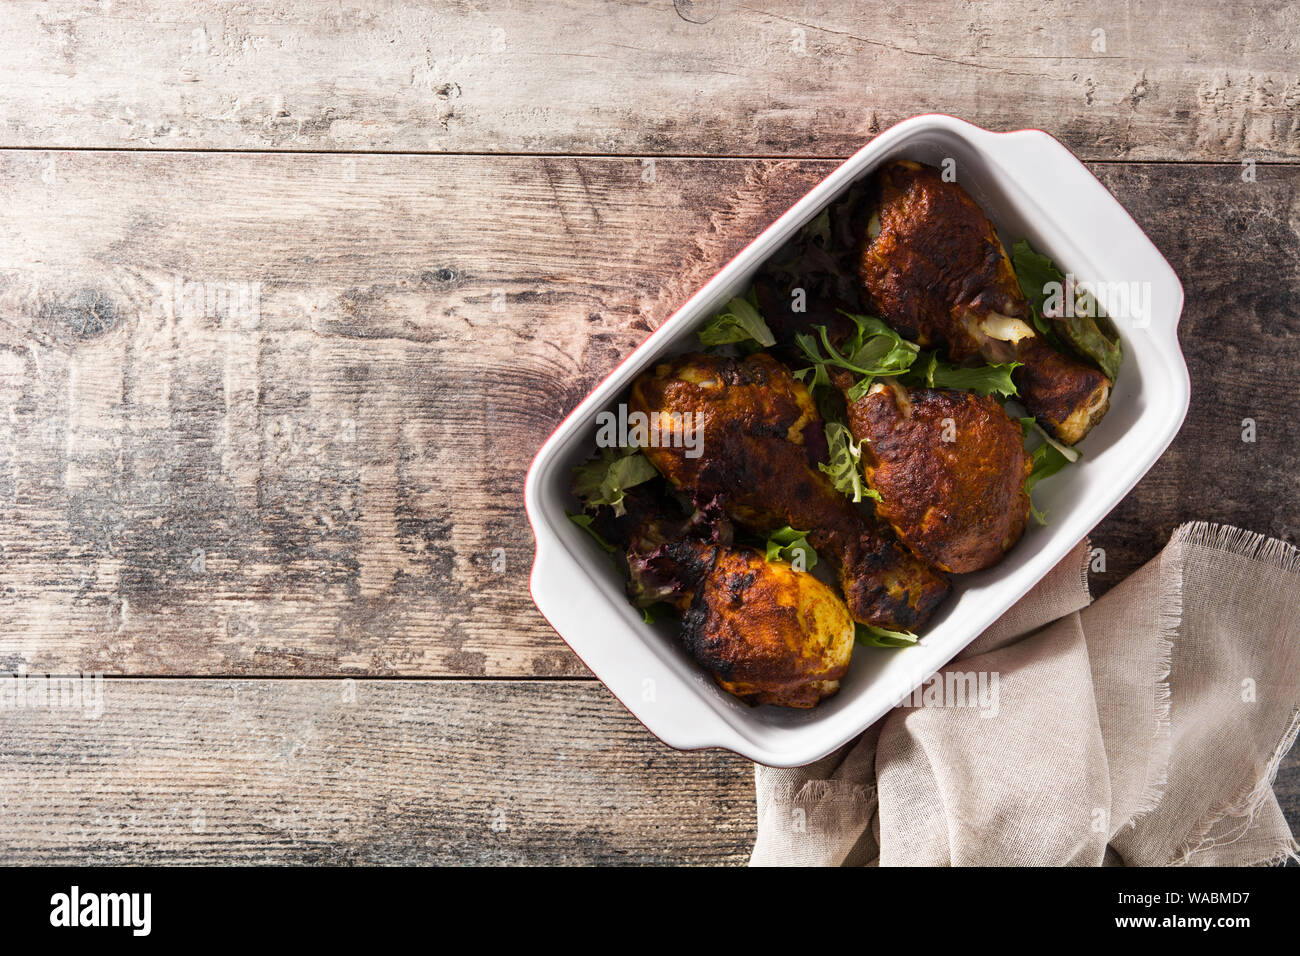 Poulet tandoori grillés avec du riz basmati sur table en bois. Vue d'en haut. Copyspace Banque D'Images